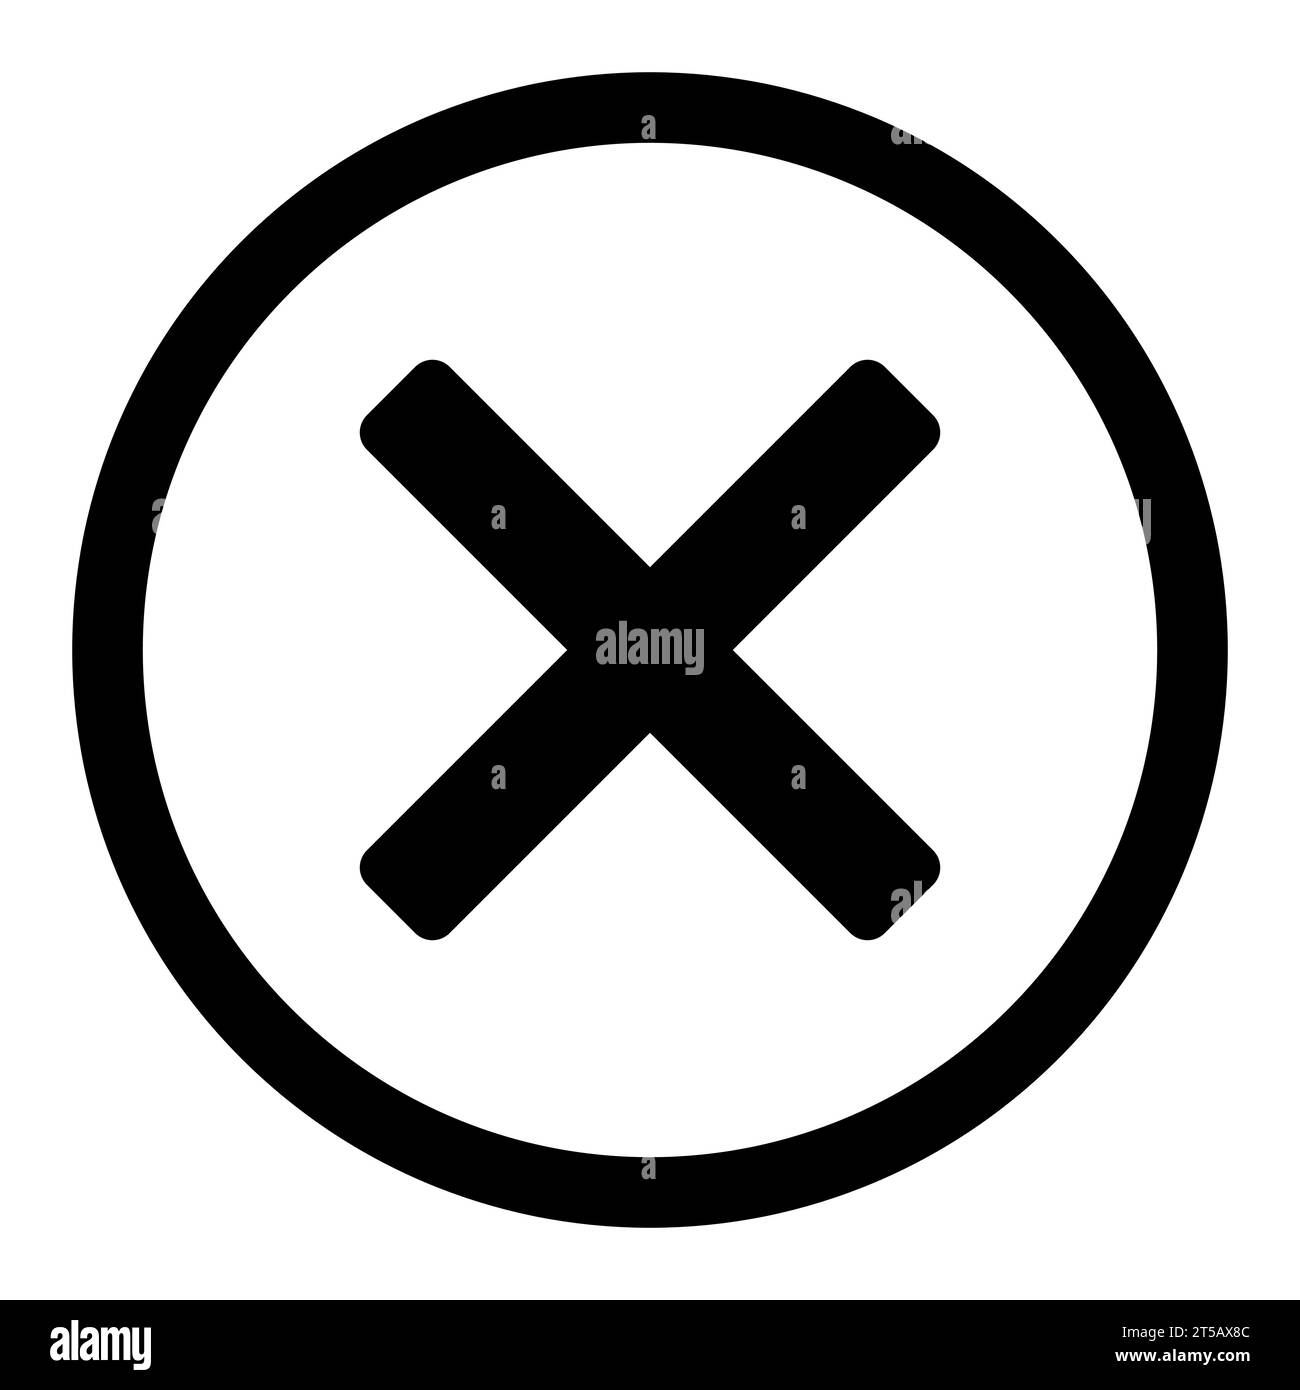 Schaltfläche Schließen - x im Kreis, Symbol für schwarz-weißes Kreuz, Vektor Stock Vektor